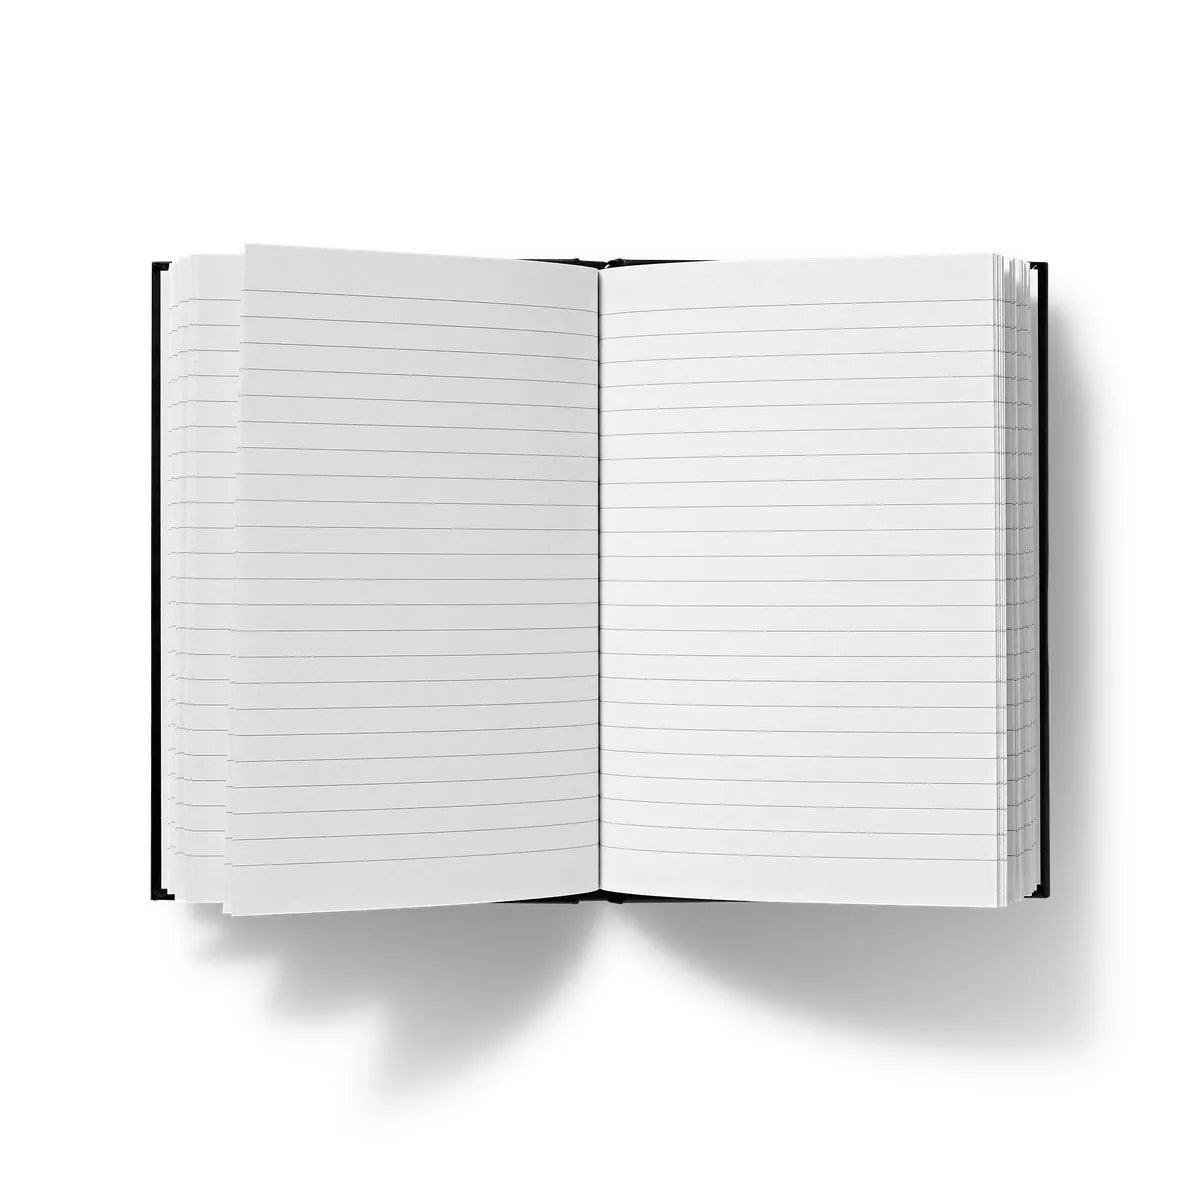 Sagittaire By Maurice Pillard Verneuil Hardback Journal - Notebooks & Notepads - Aesthetic Art